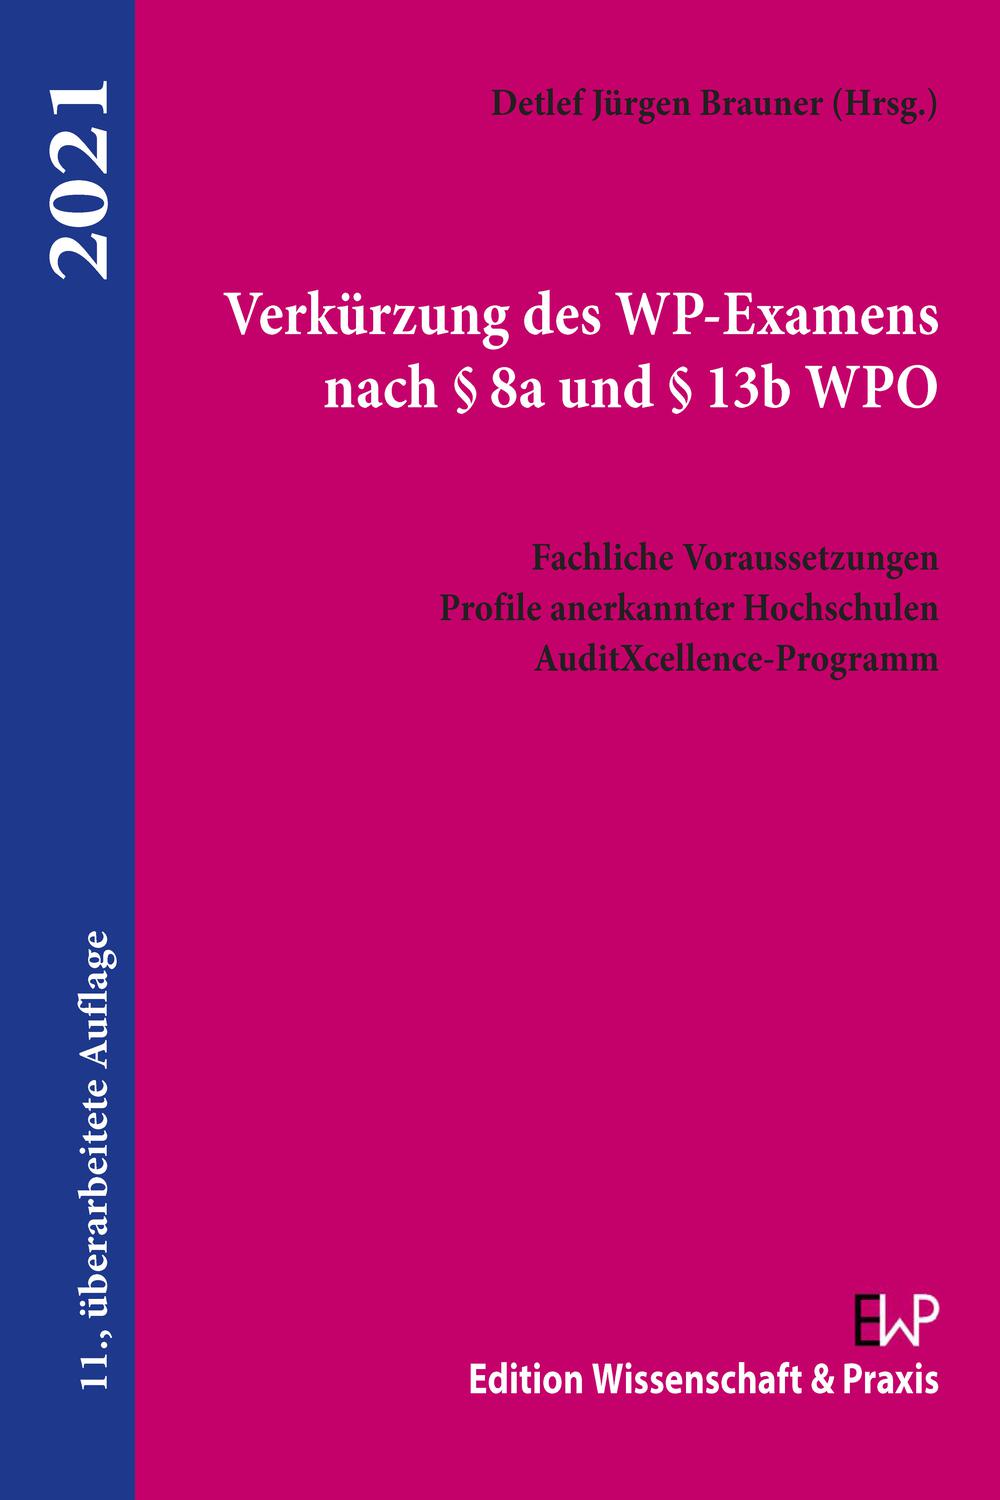 Verkürzung des WP-Examens nach § 8a und § 13b WPO. - Detlef Jürgen Brauner